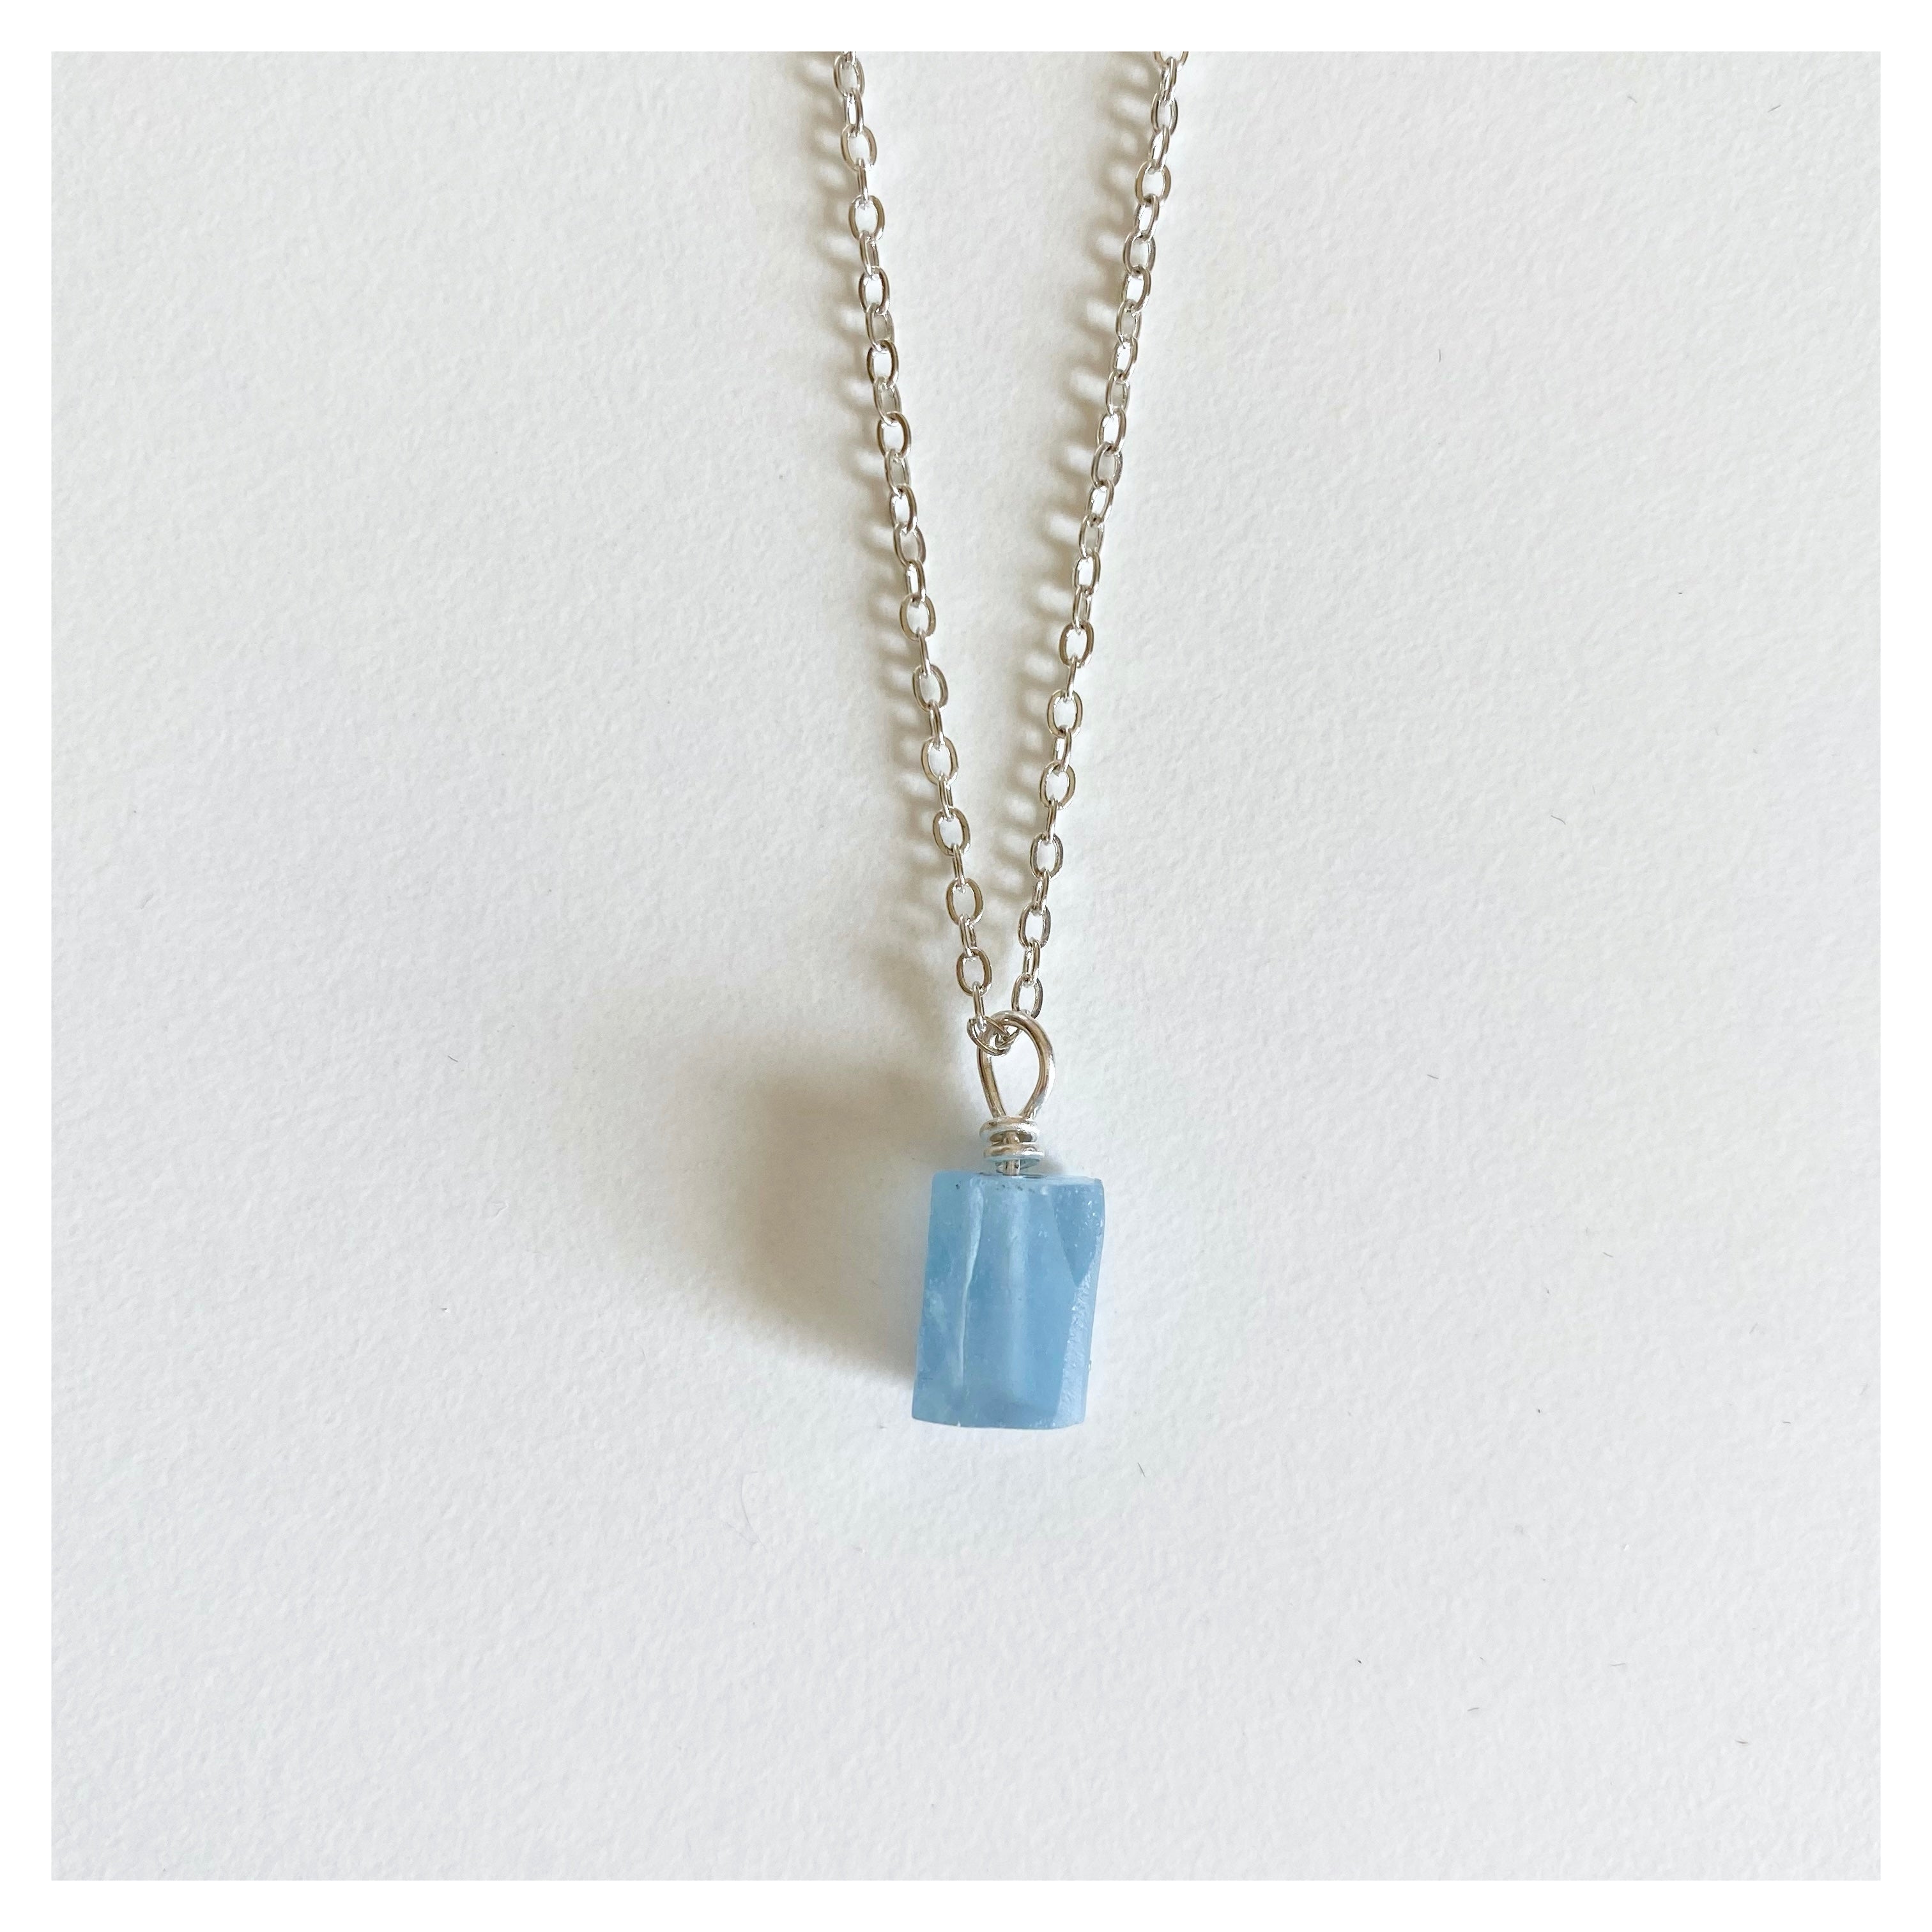 Aquamarine Necklace Raw Aquamarine Necklace Crystal Pendant | Etsy